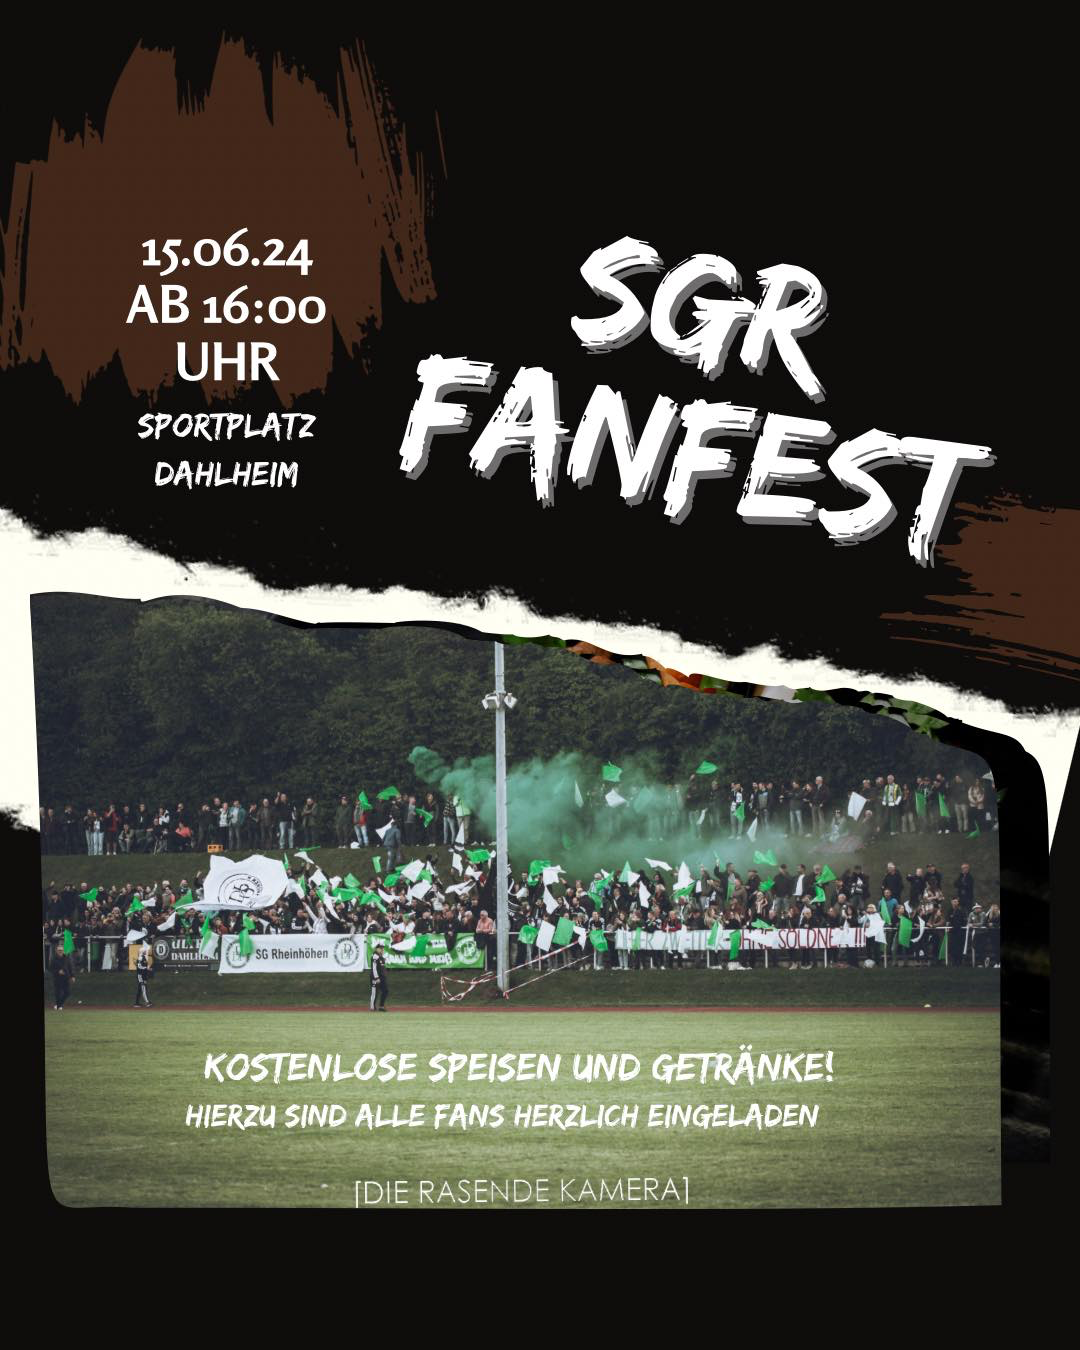 SGR Fanfest am Samstag, 15.06. ab 16 Uhr